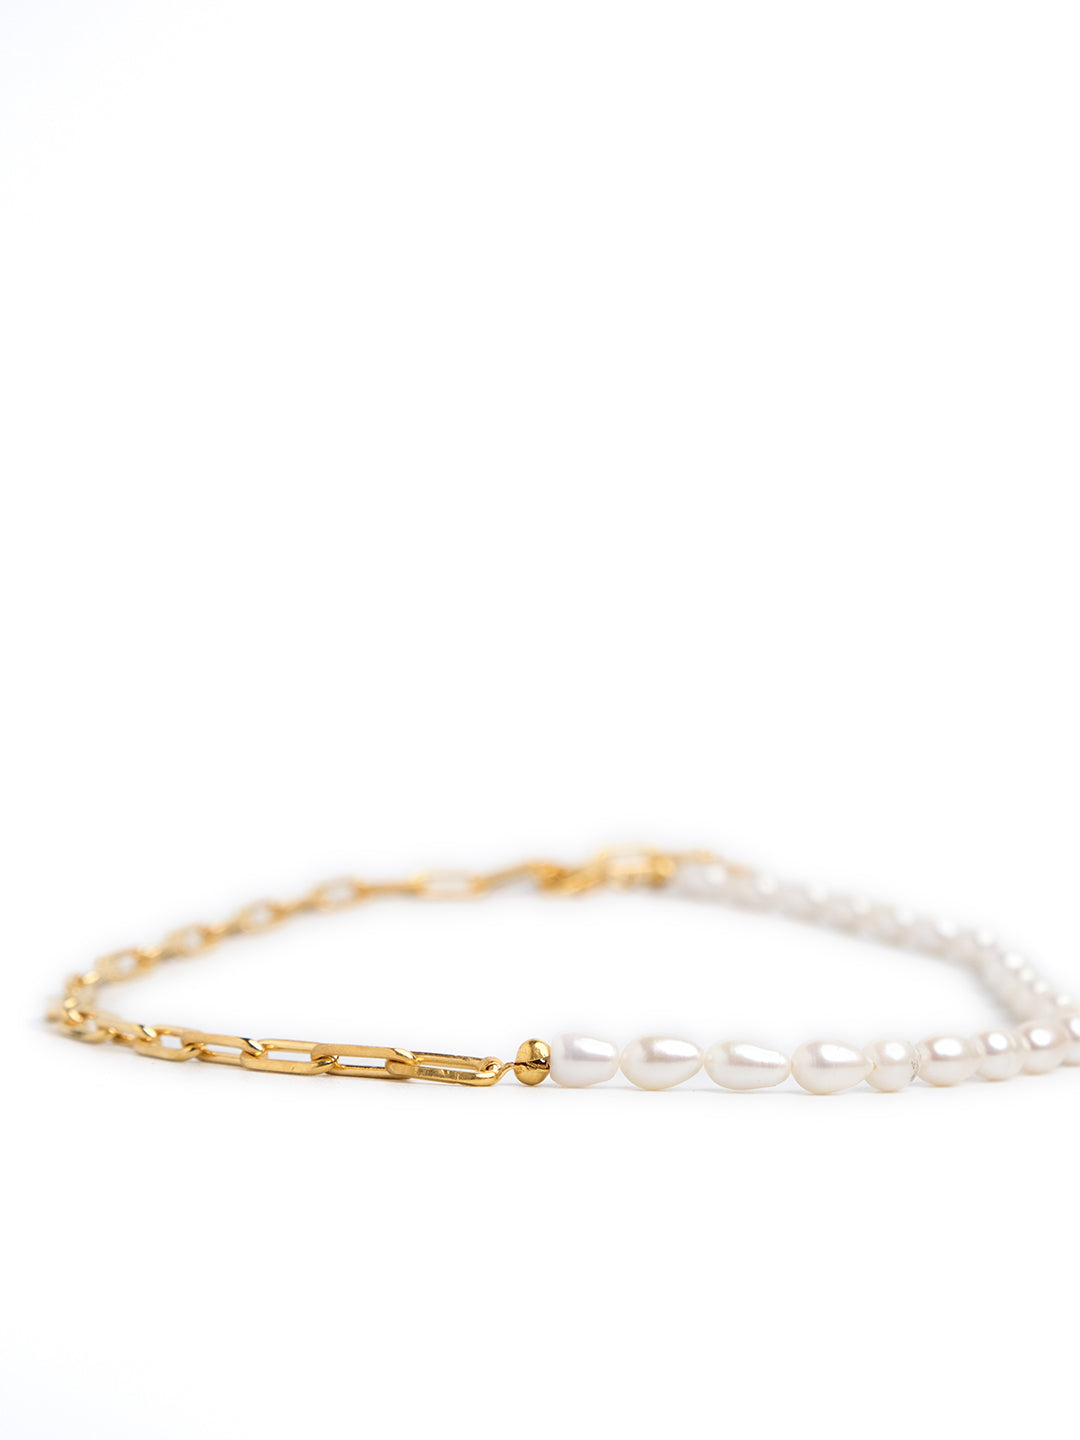 Linked Pearl bracelet men, women, unisex. Pearl bracelet gold for he, him, her, she | Butter & Co